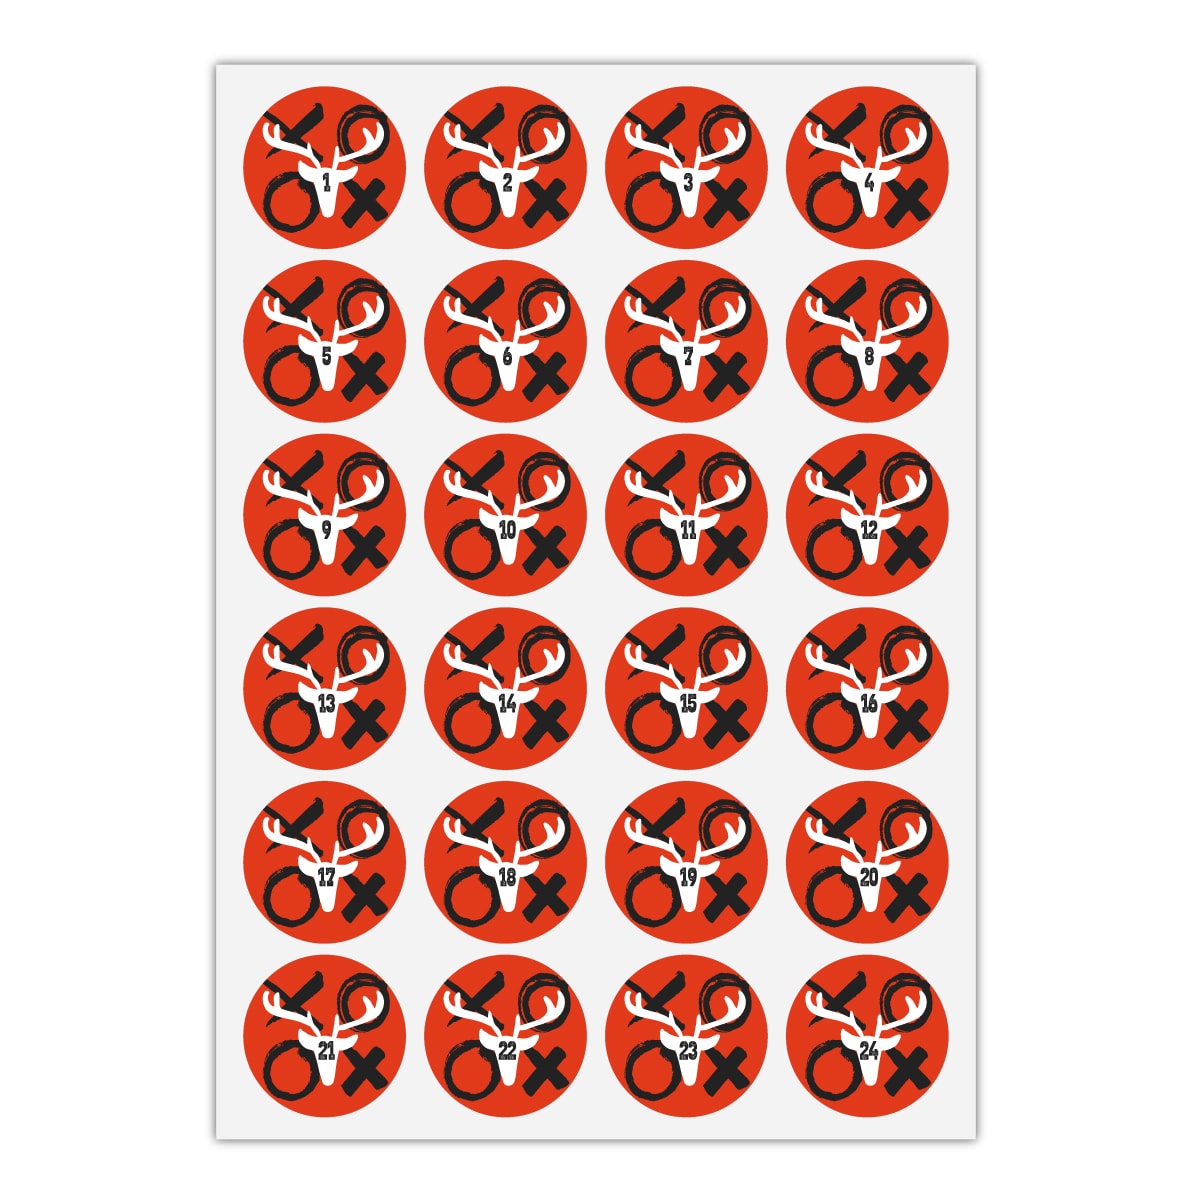 Kartenkaufrausch Sticker in rot: 24 coole Advents Aufkleber